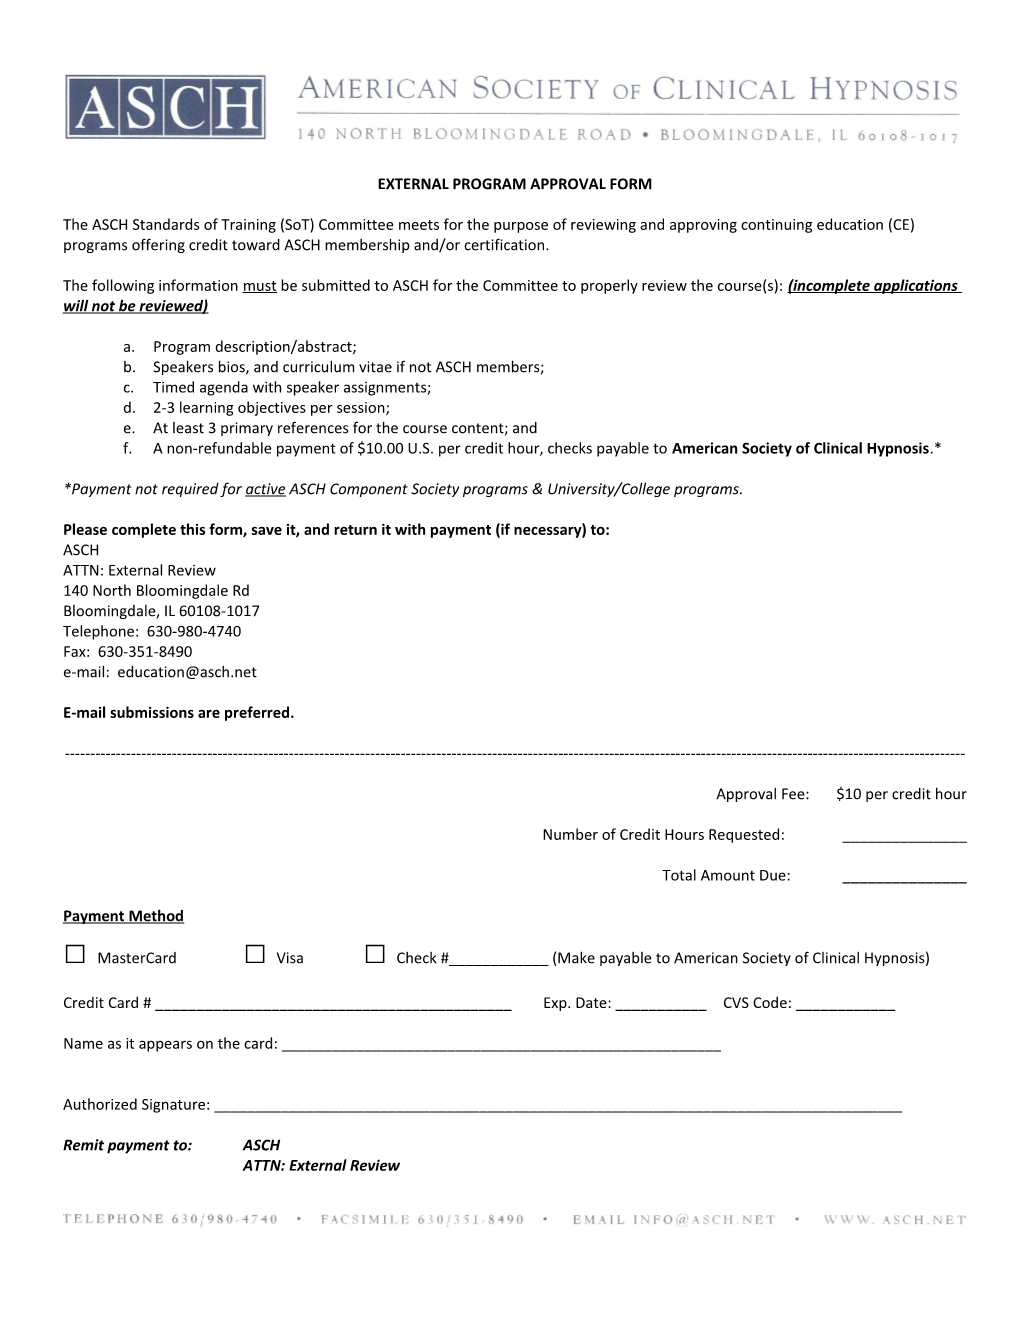 External Program Approval Form s1